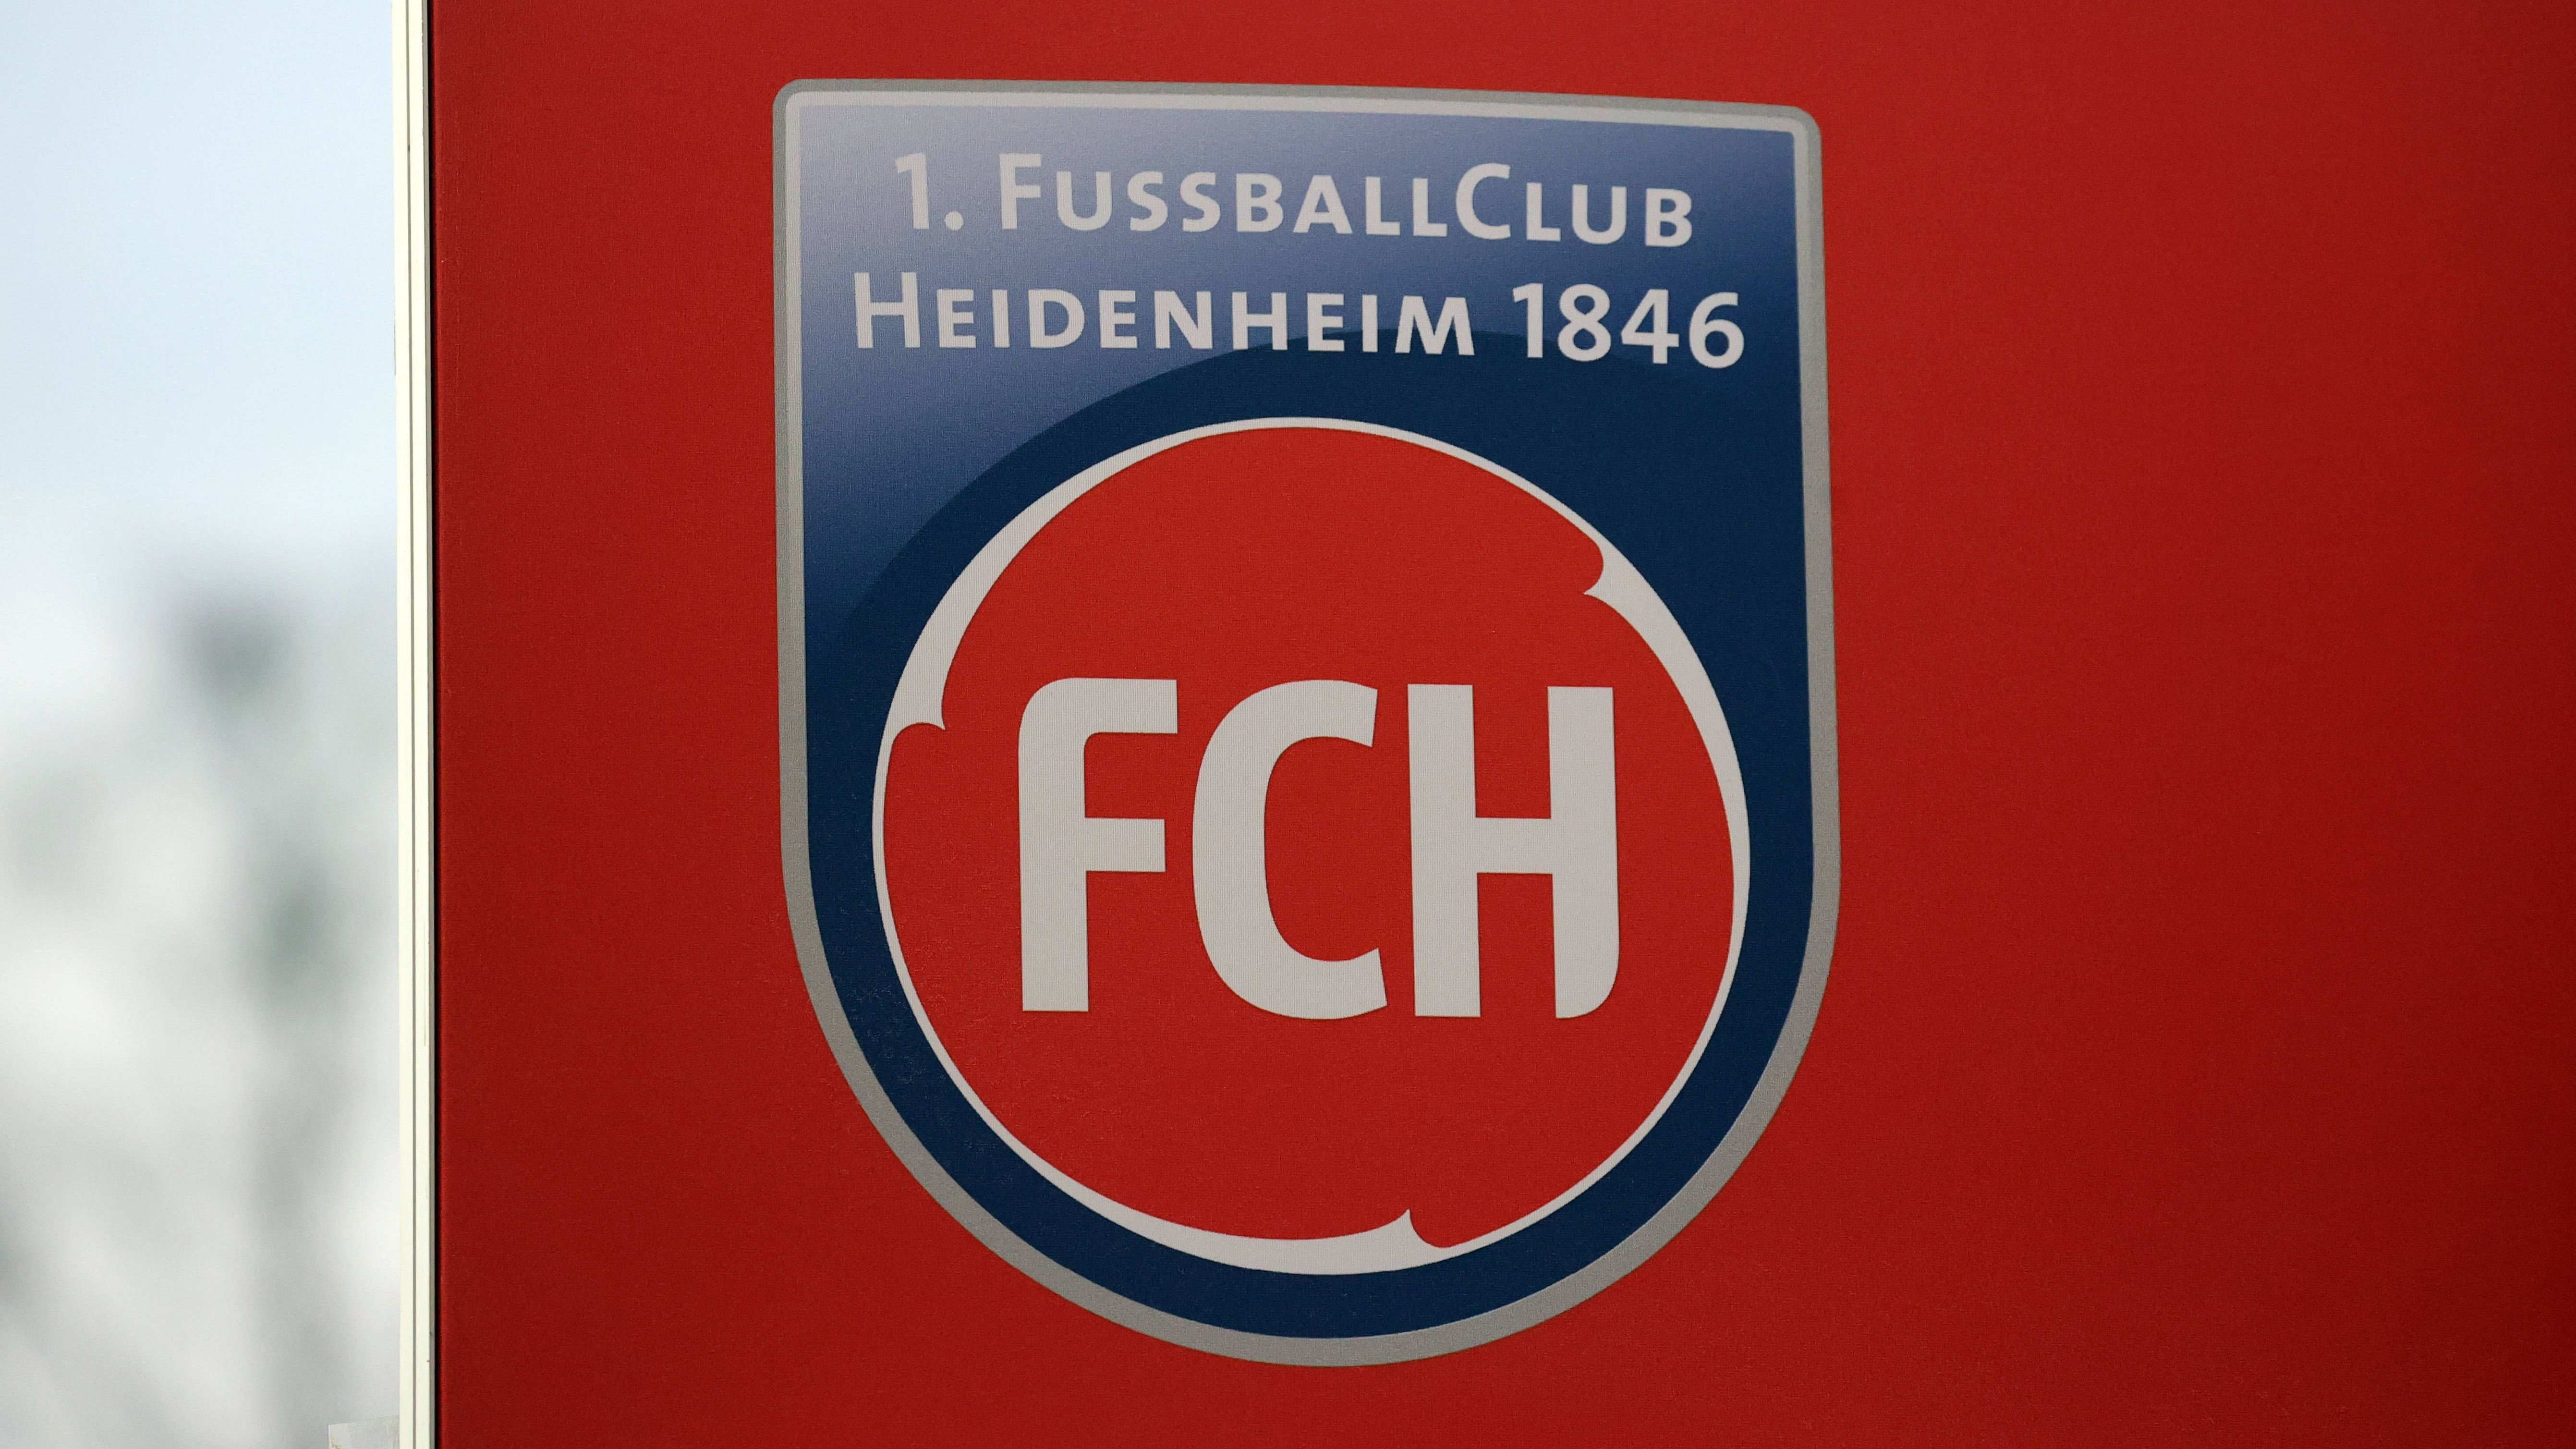 <strong>Platz 17: 1. FC Heidenheim (15. Juni 2007)</strong><br>Jahrzehntelang wurde in Heidenheim in einem Gesamtverein, dem Heidenheimer Sportbund (HSB), gekickt. Am 15. Juni 2007 erfolgte dann die Abspaltung. Der 1. FC Heidenheim wurde geboren. Der Name trägt die Jahreszahl 1846, welche auf die lange Tradition des HSB anspielt.&nbsp;<br><br><strong>Saisons in der Bundesliga: 1</strong>